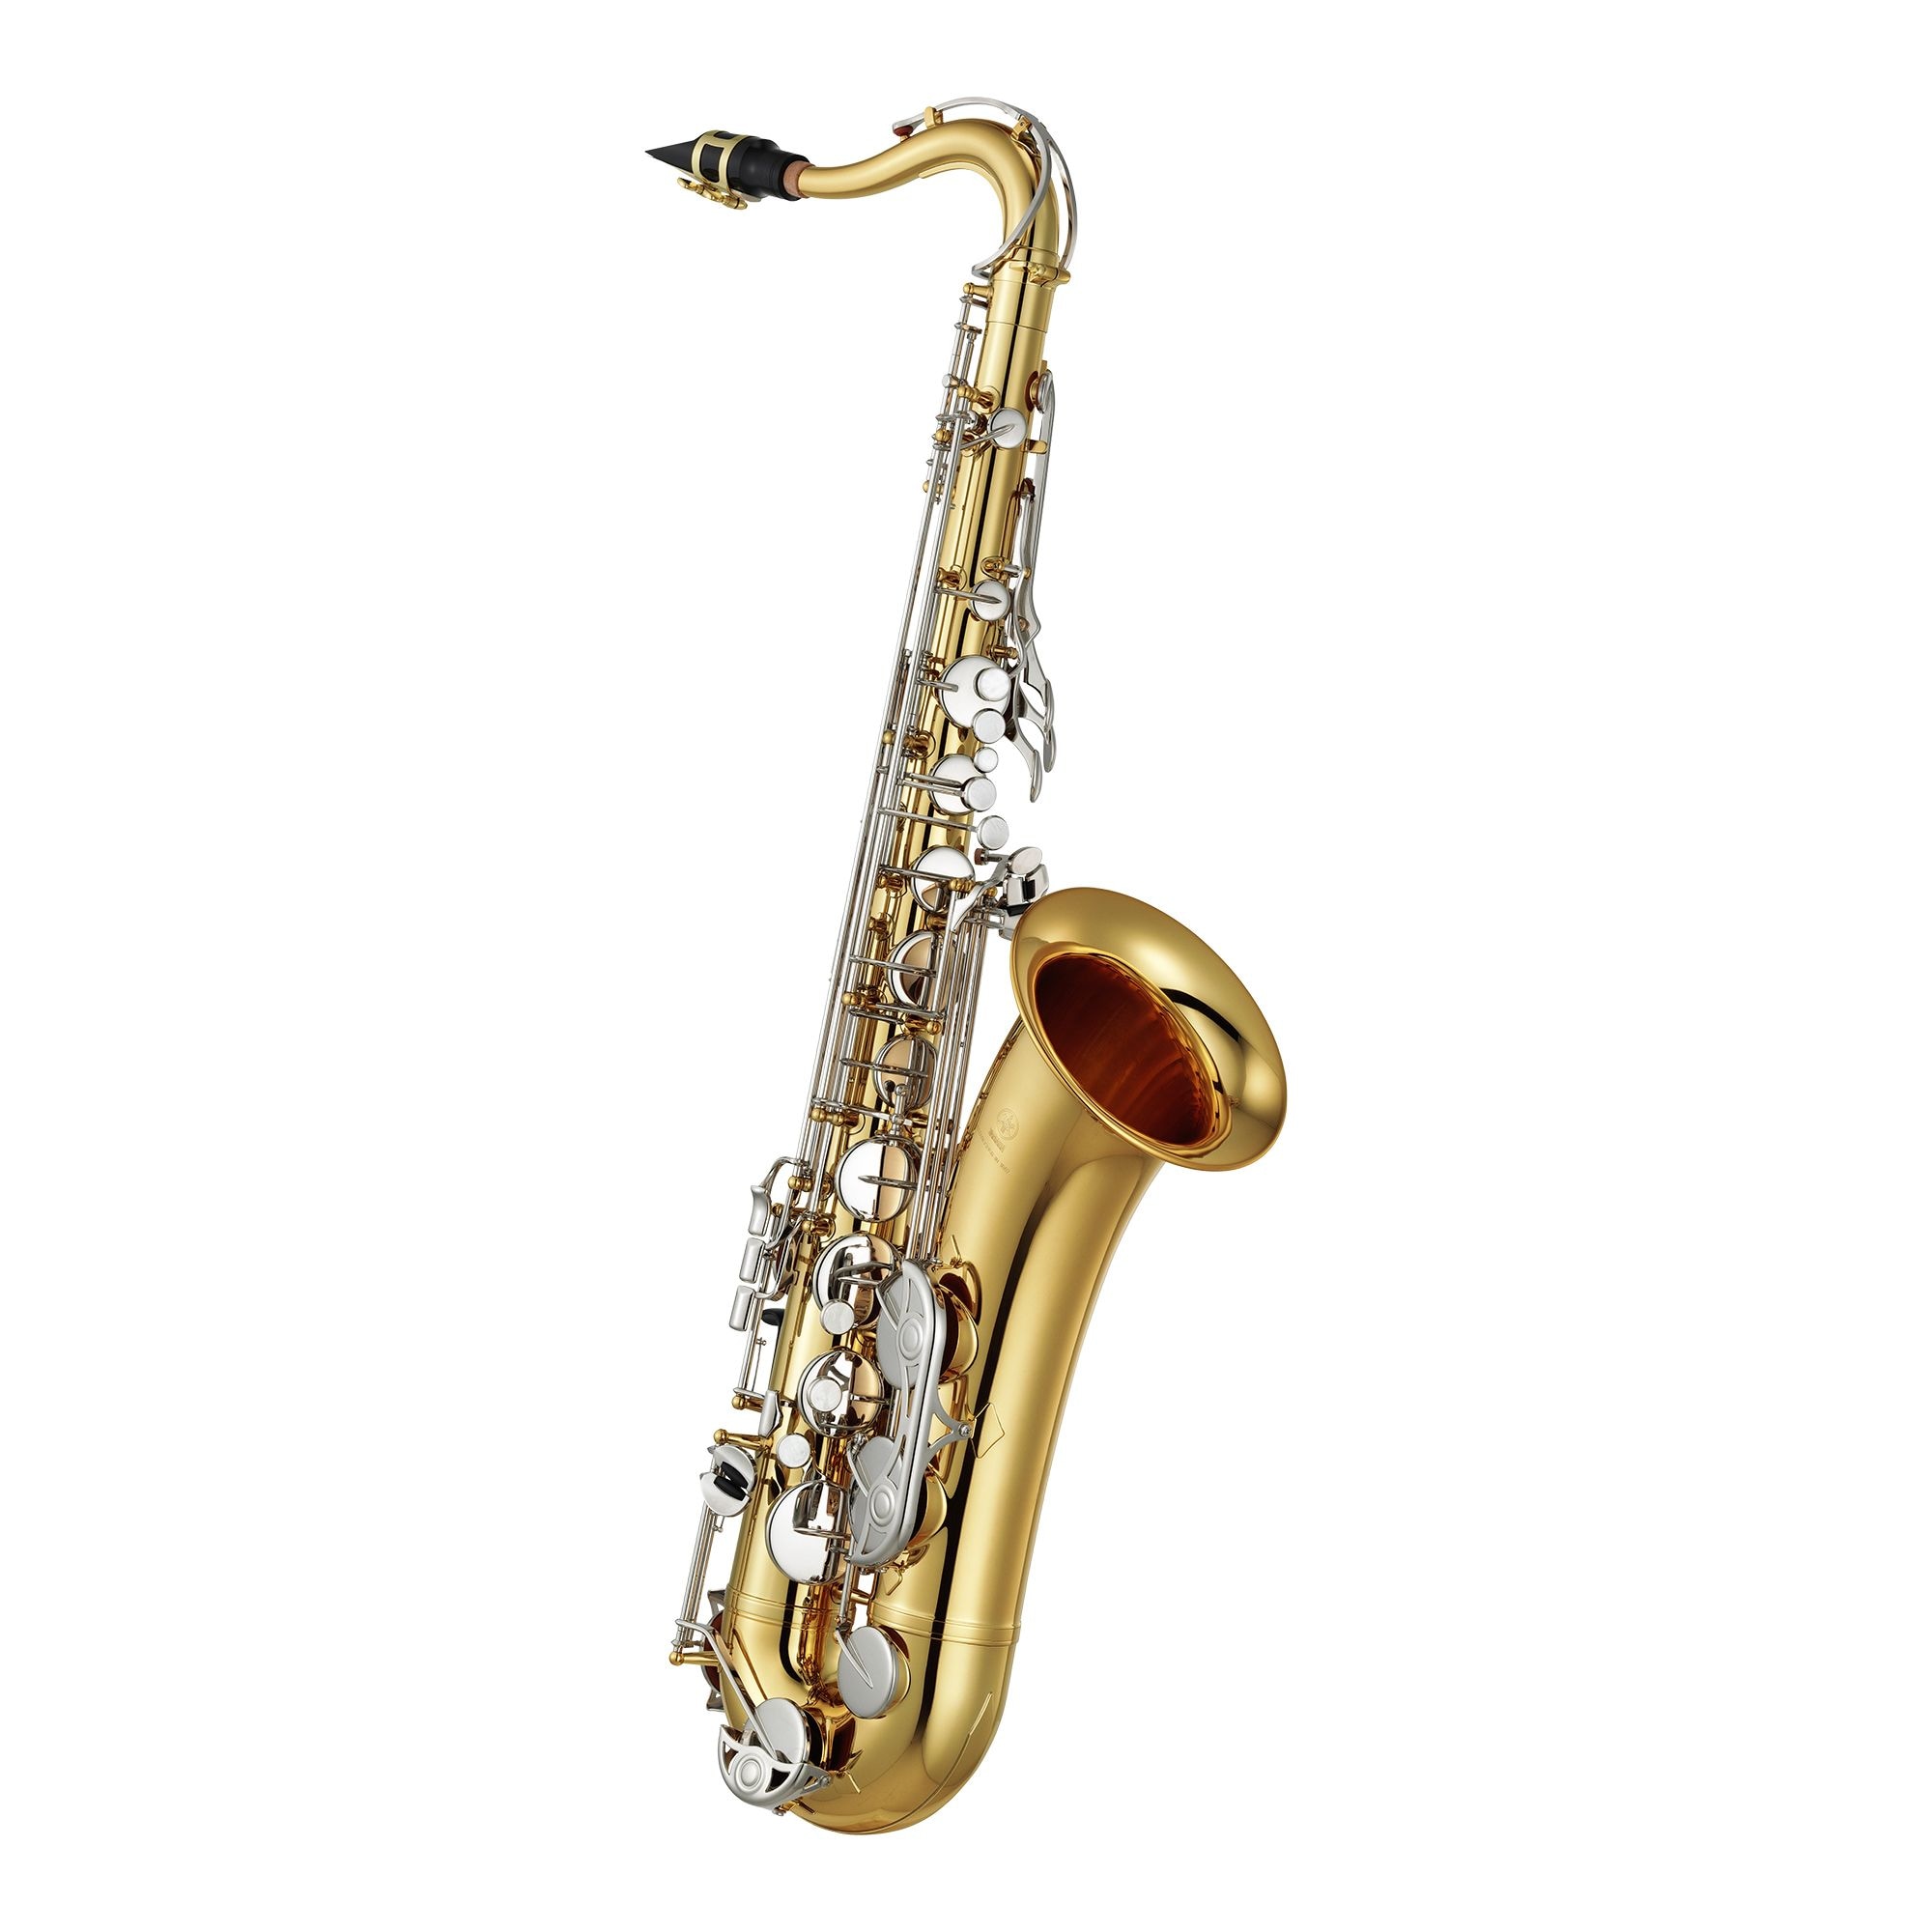 YTS-26 - Overview - Saxophones - Brass & Woodwinds - Musical